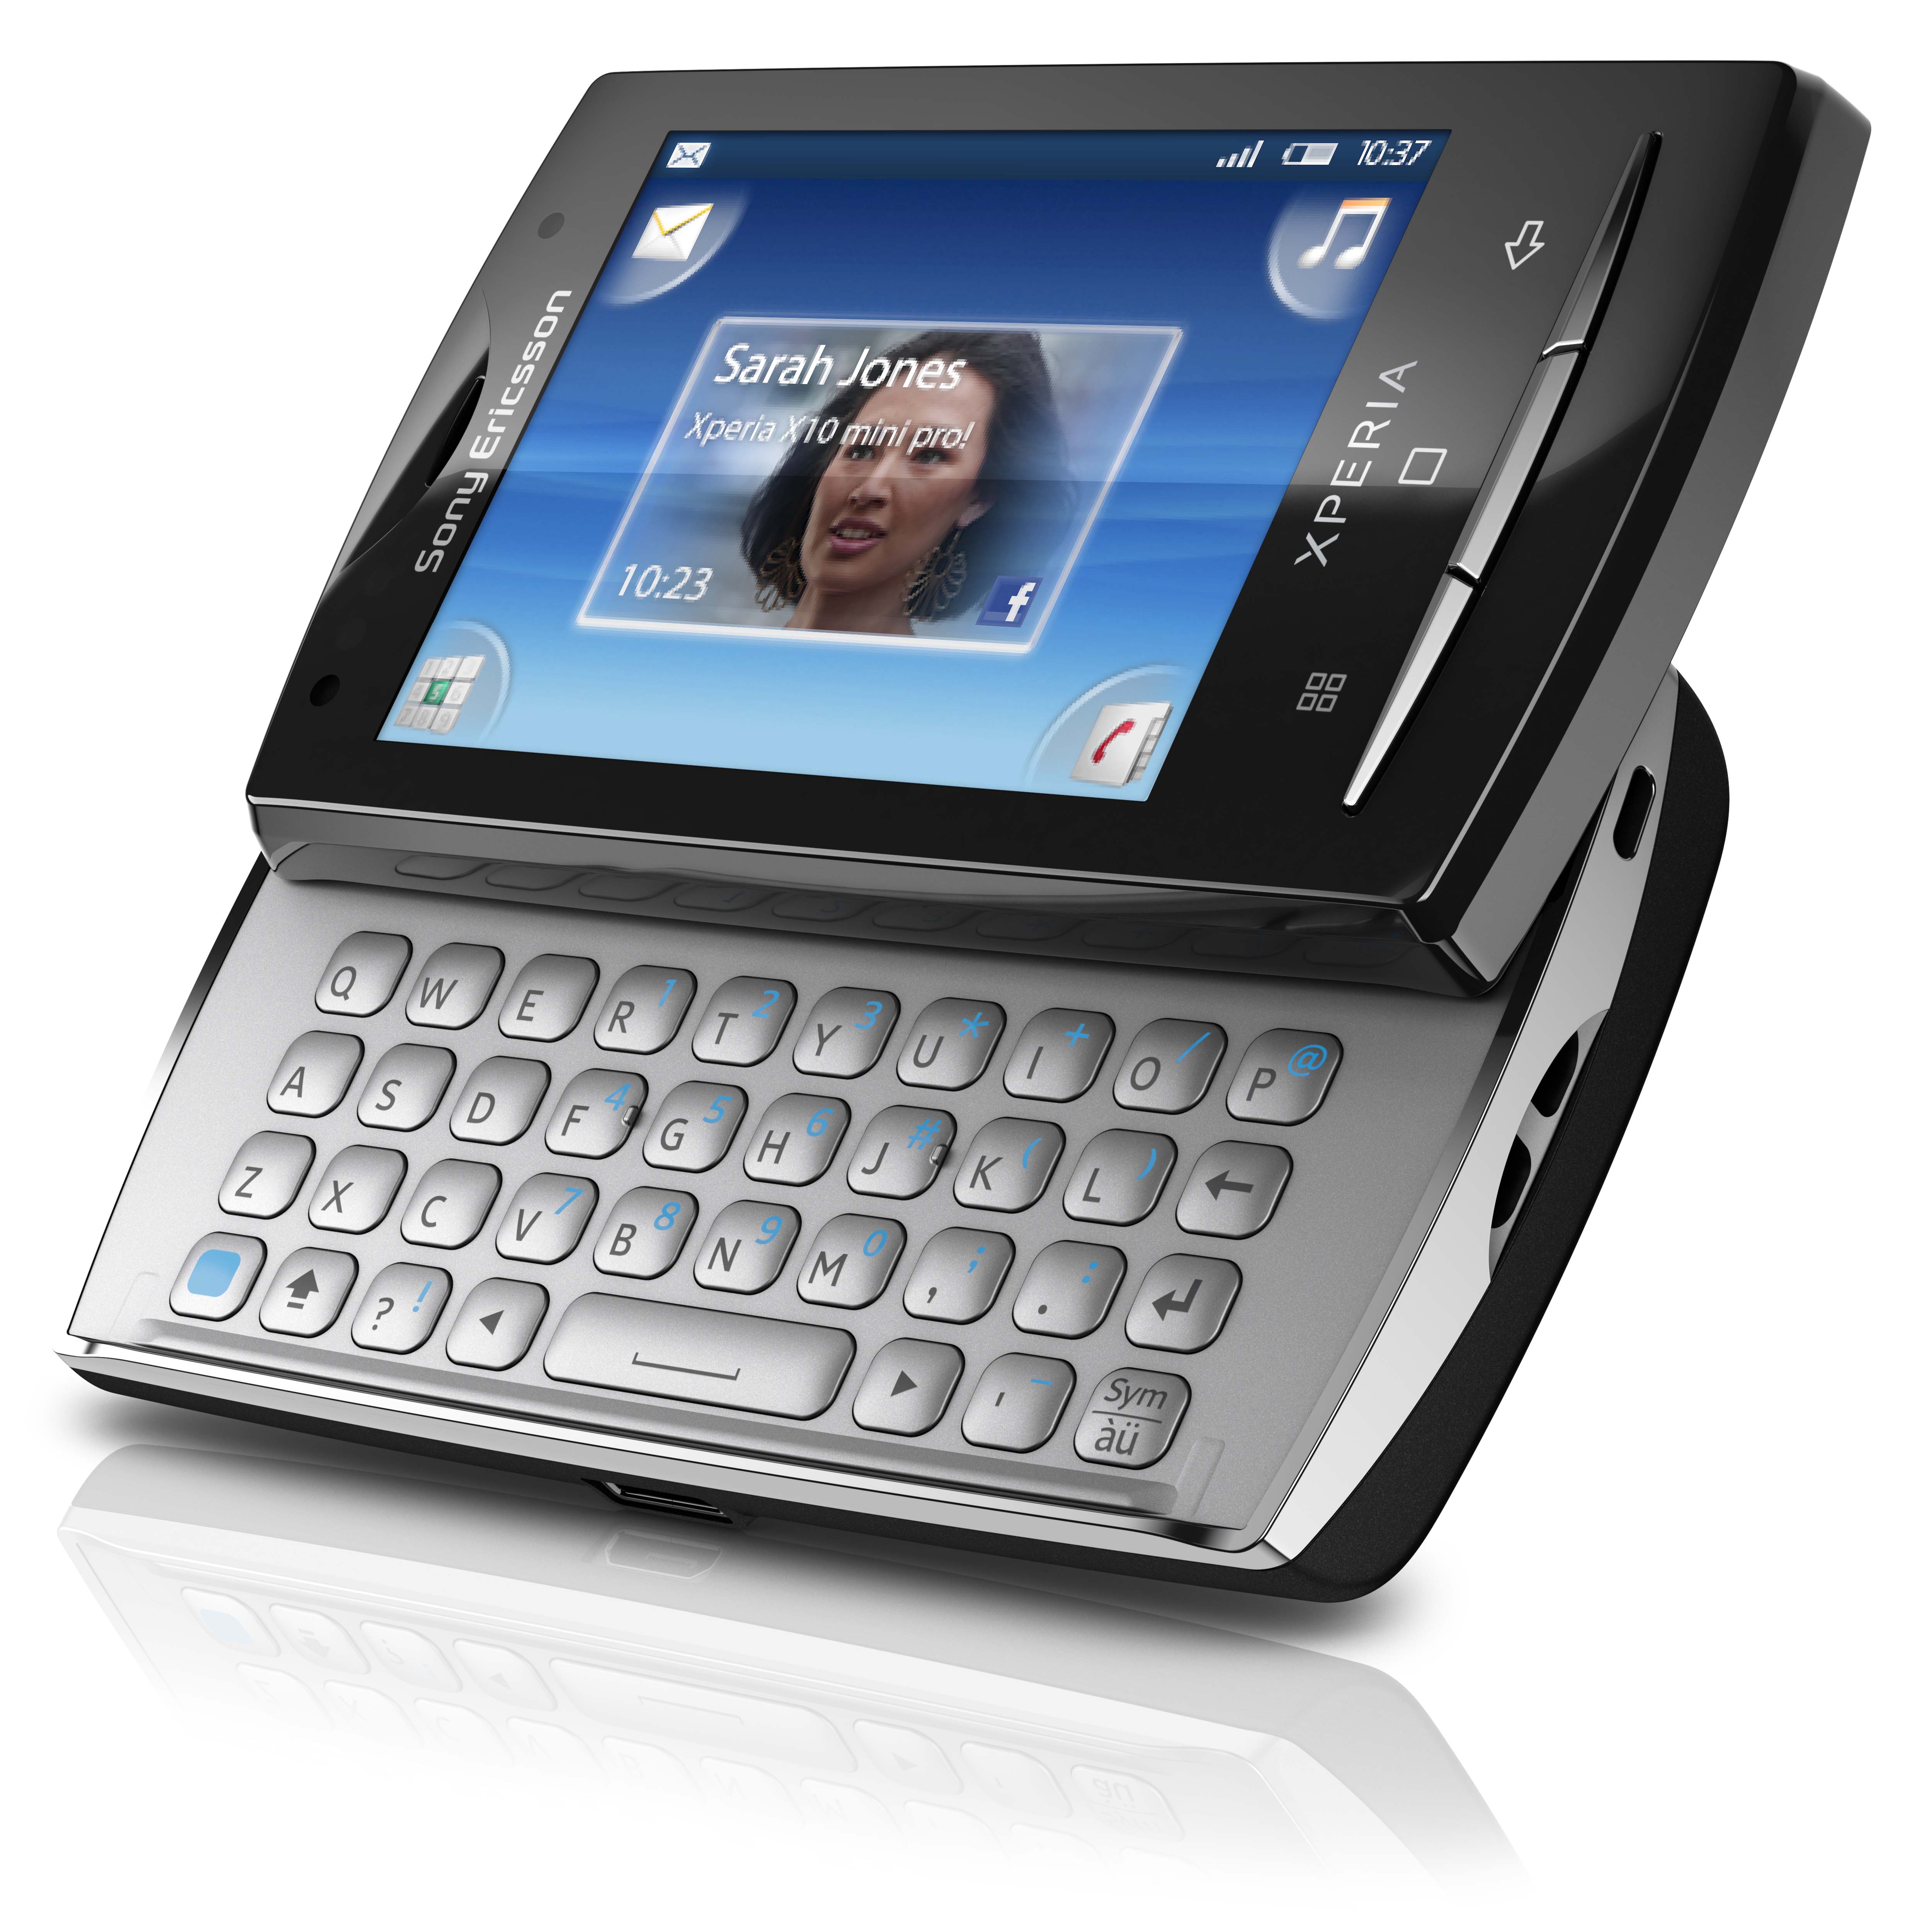 Klingeltöne Sony-Ericsson Xperia X10 mini kostenlos herunterladen.